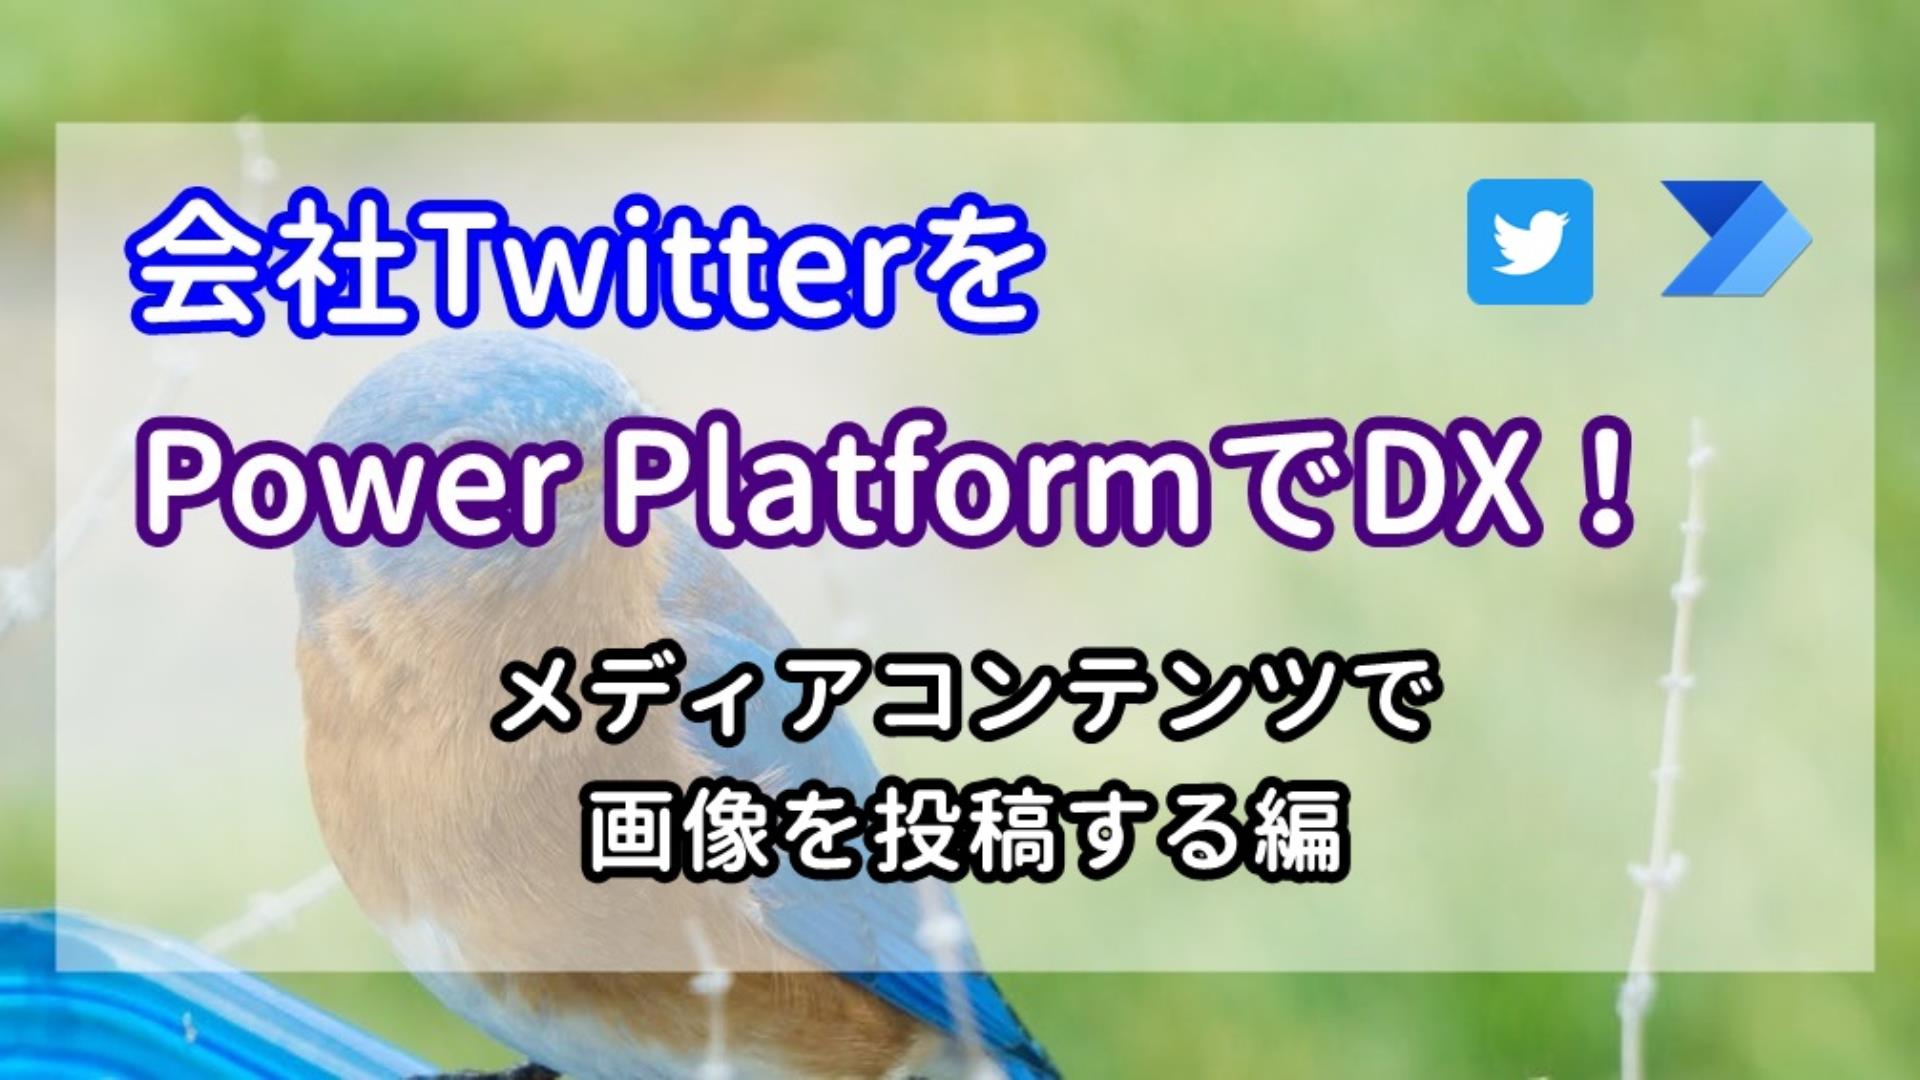 会社TwitterをPower PlatformでDX！~メディアコンテンツで画像を投稿する編~